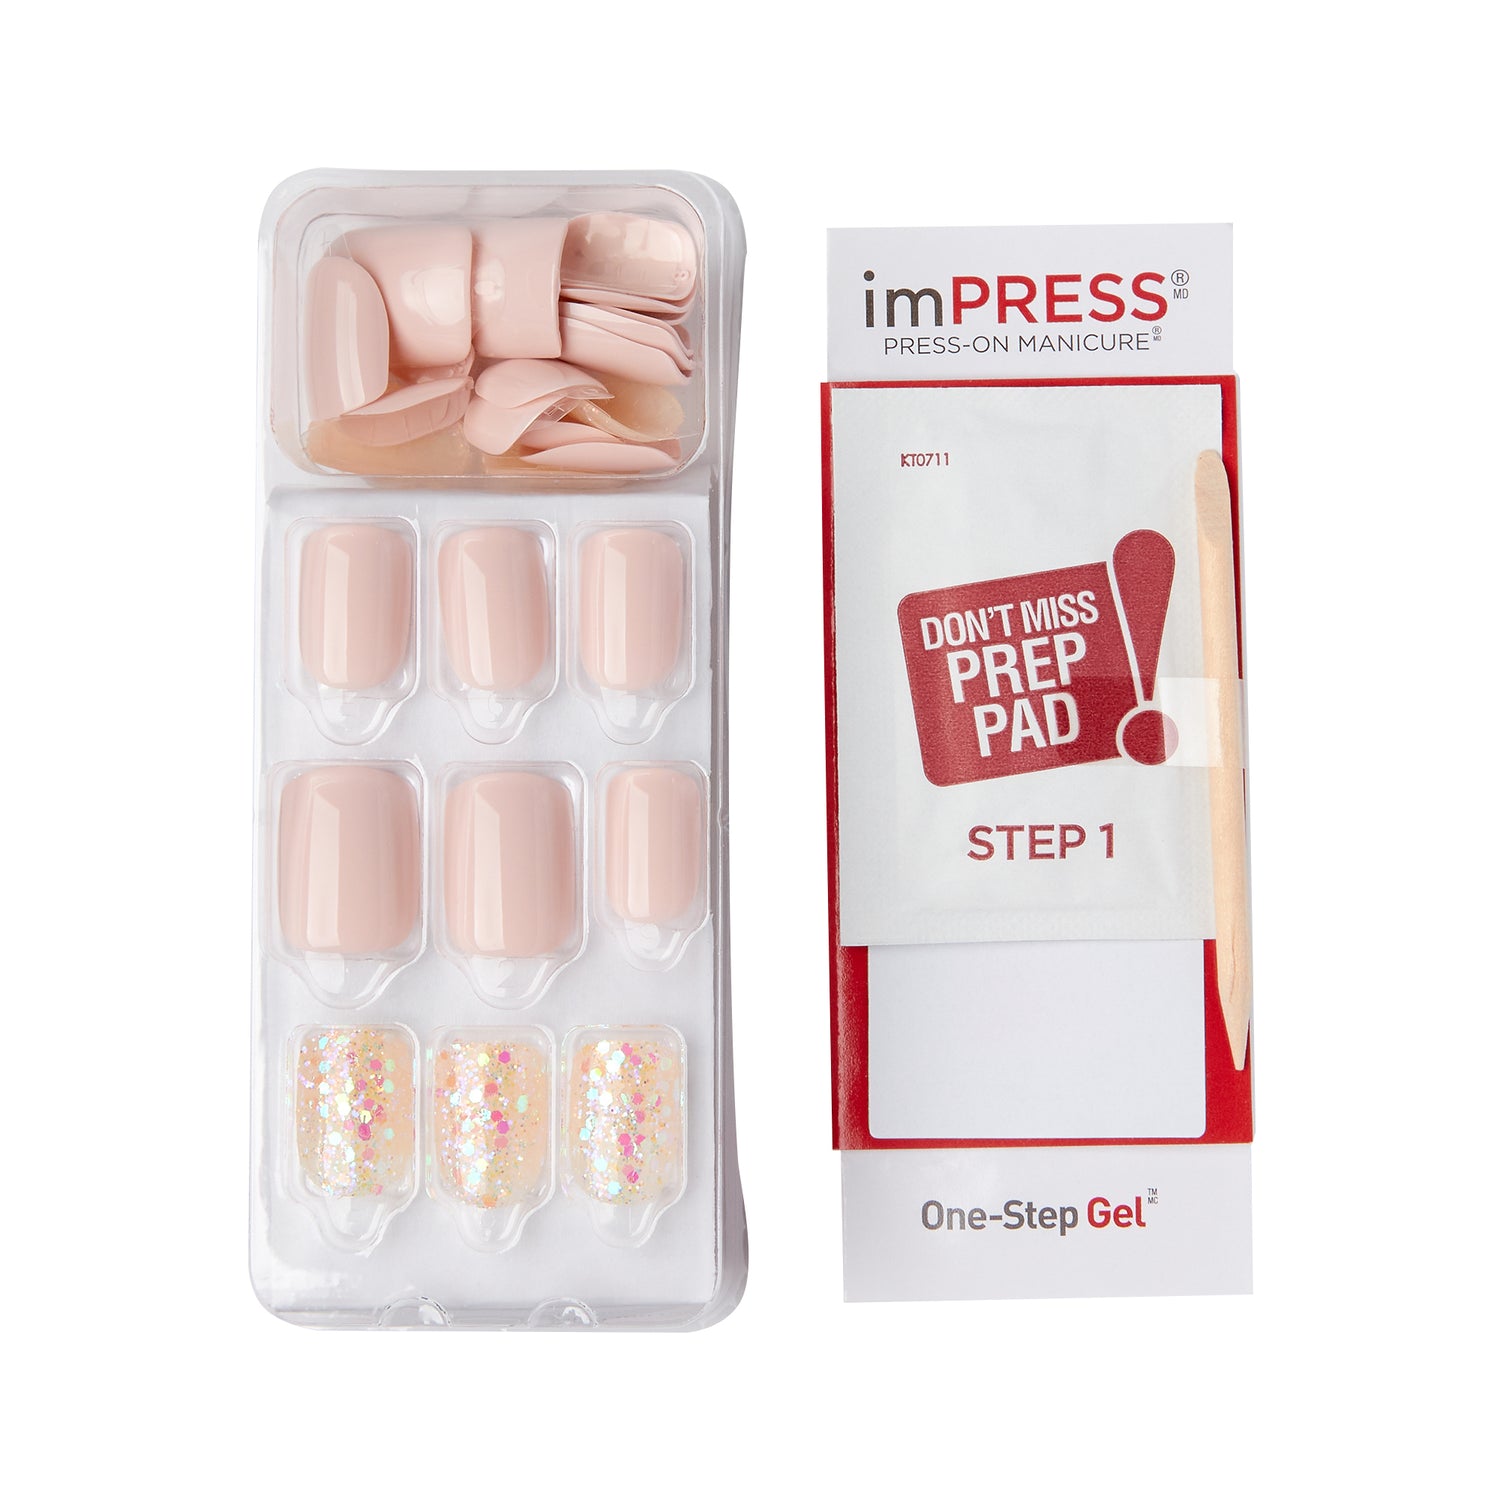 imPRESS Press-On Manicure - Dorothy